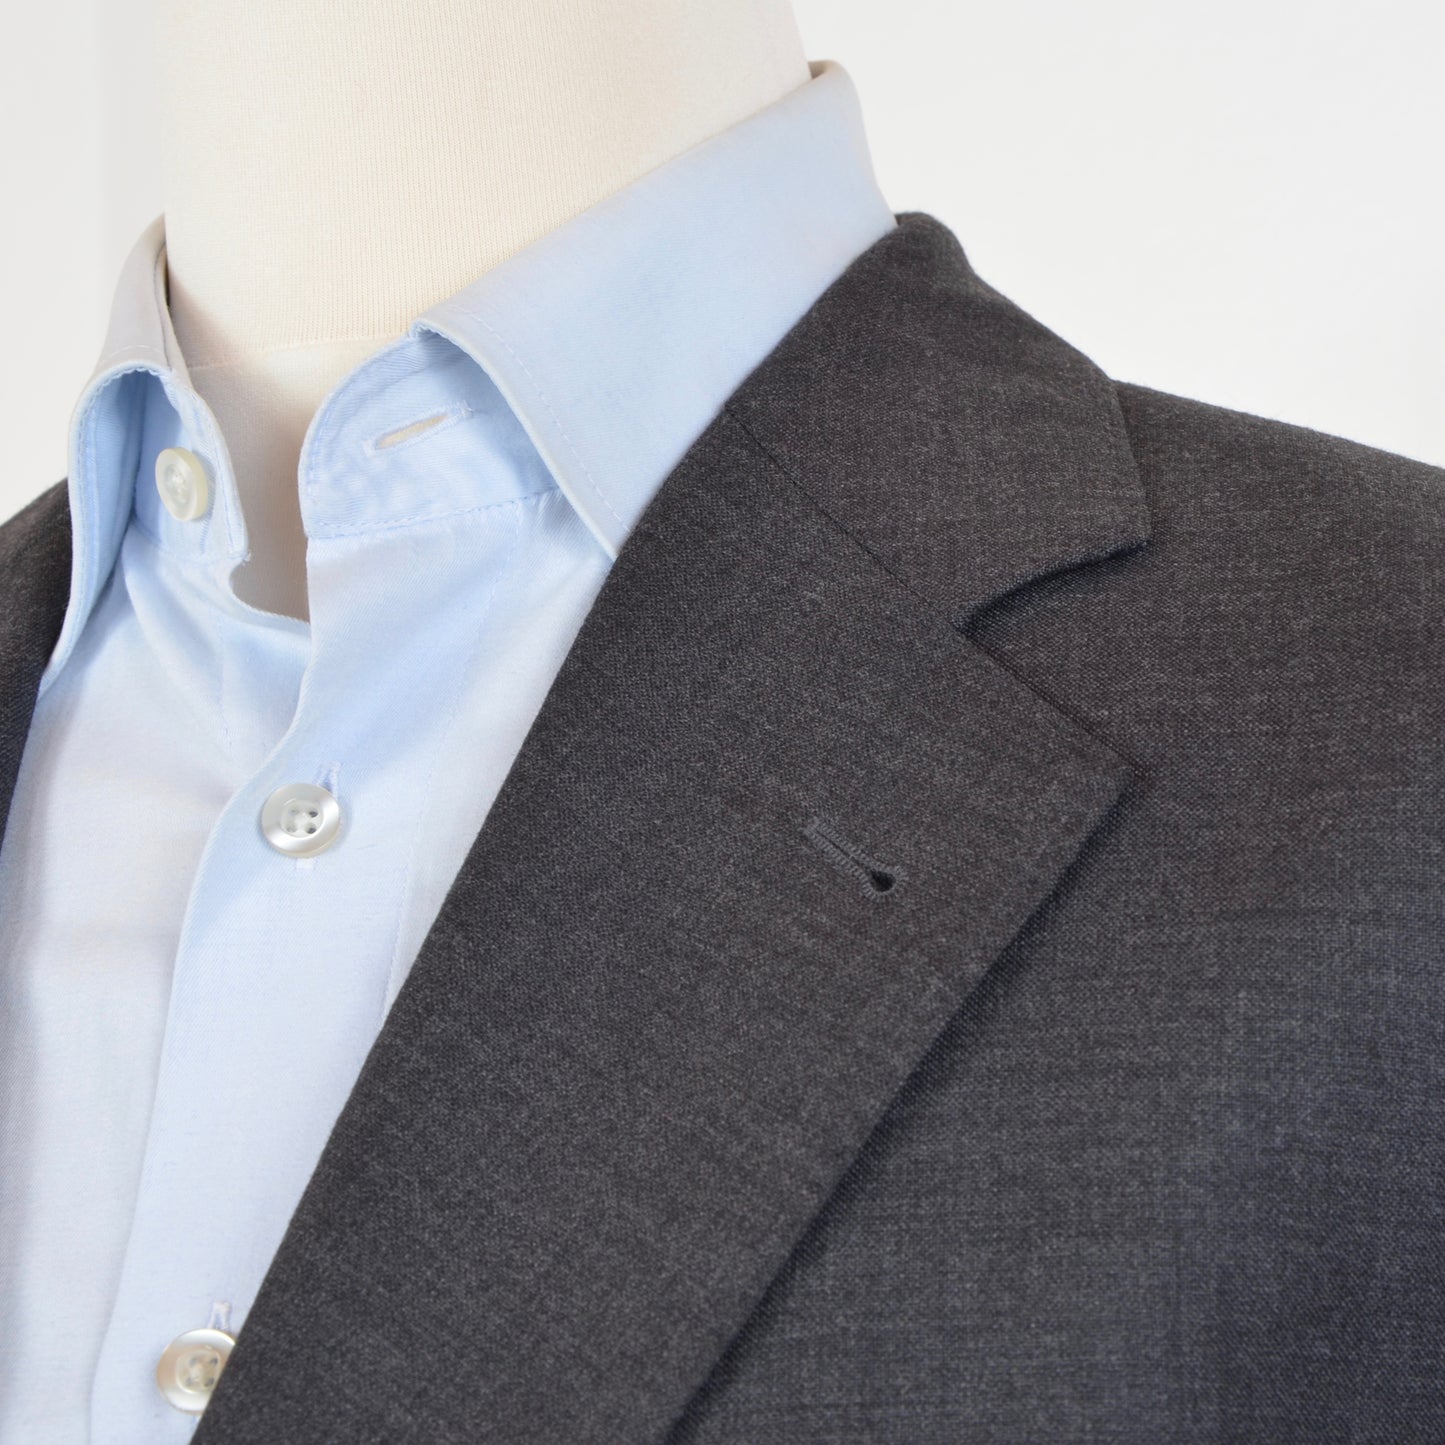 Burberrys Wool Suit Size 54 - Grey